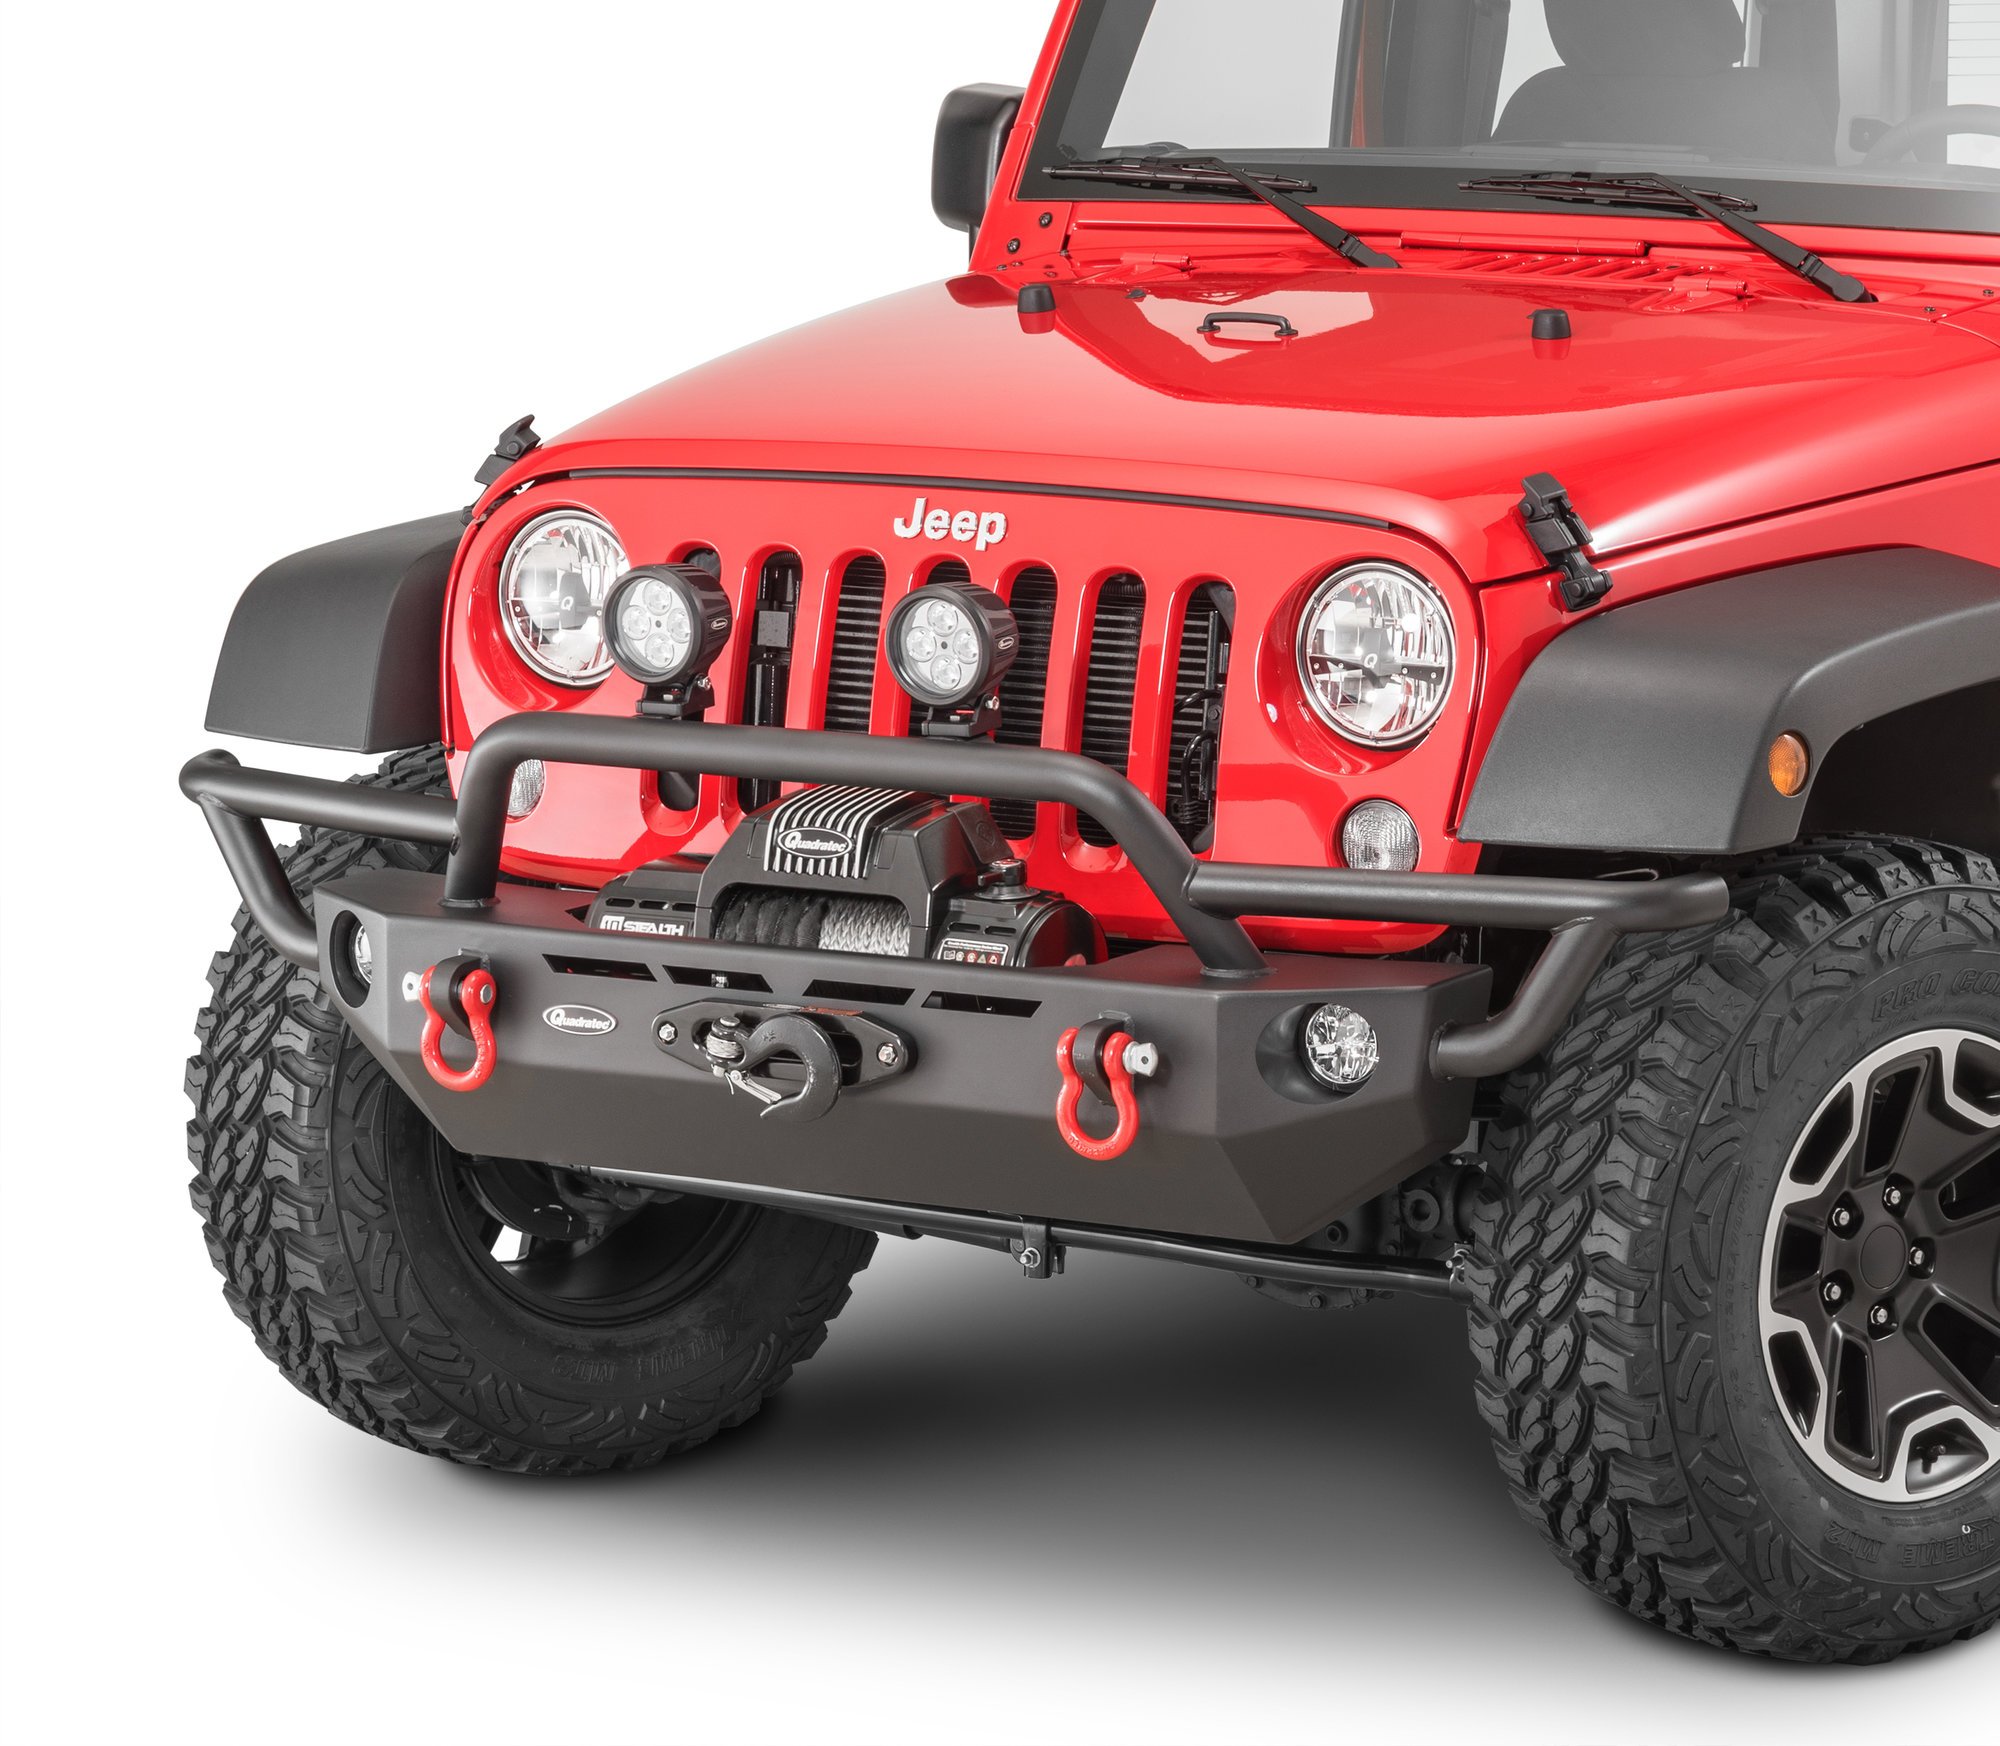 Full Width Front Bumper w/ Winch Plate & Spotlights For Jeep Wrangler JK 07-18 